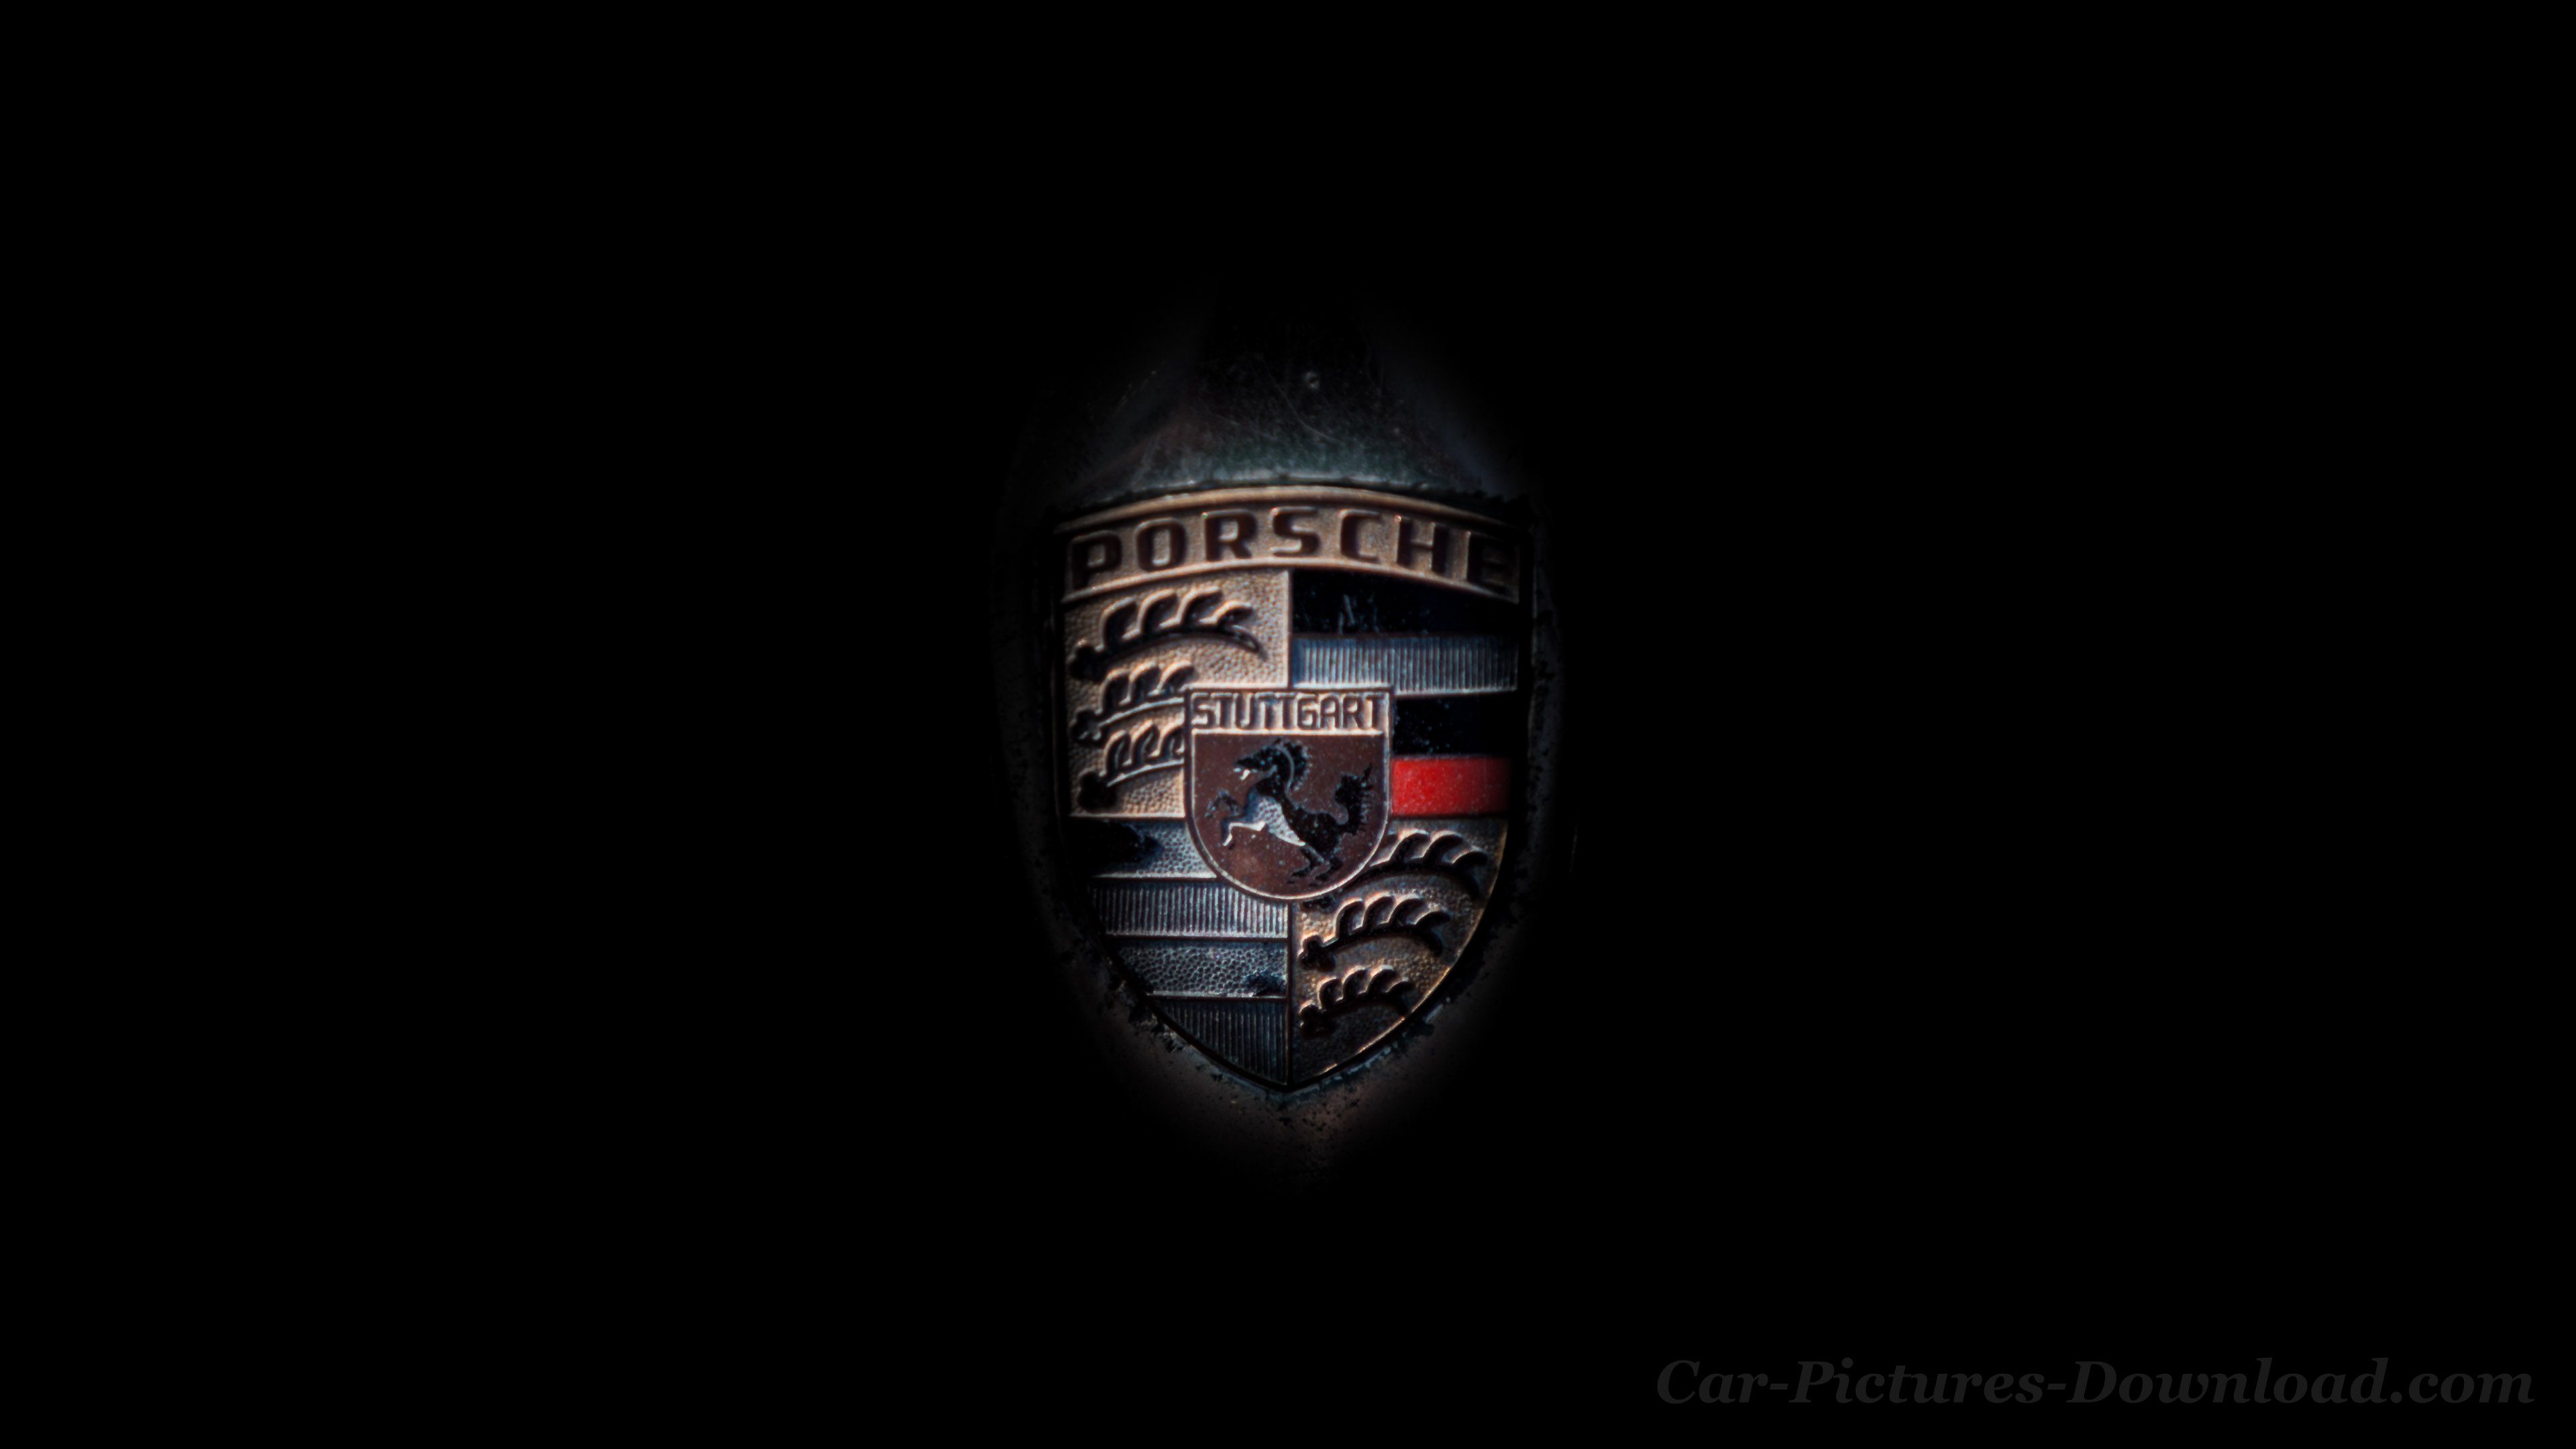 Porsche Wallpaper Image, Desktop & Mobile